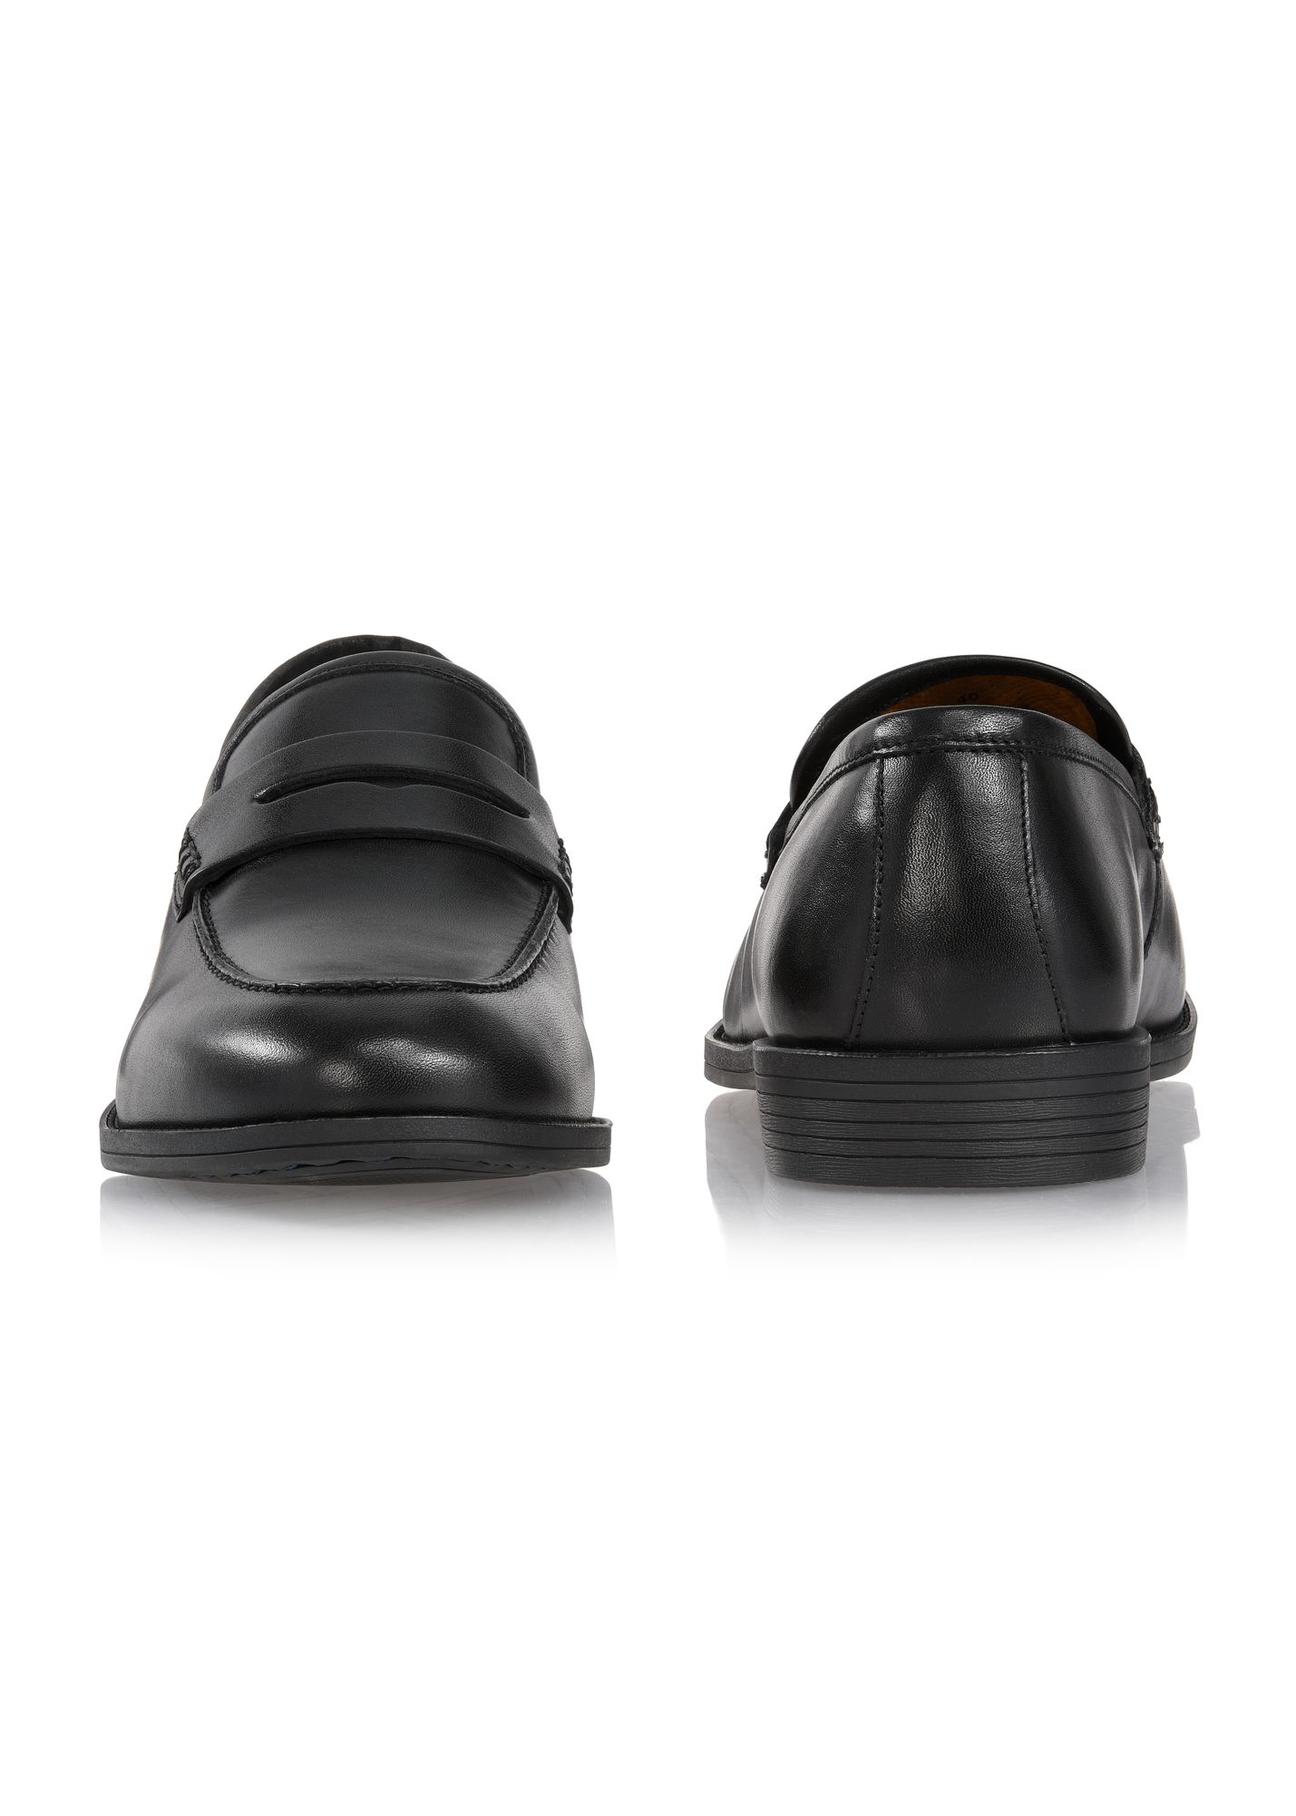 Skórzane czarne loafersy męskie BUTYM-0454-99(W24)